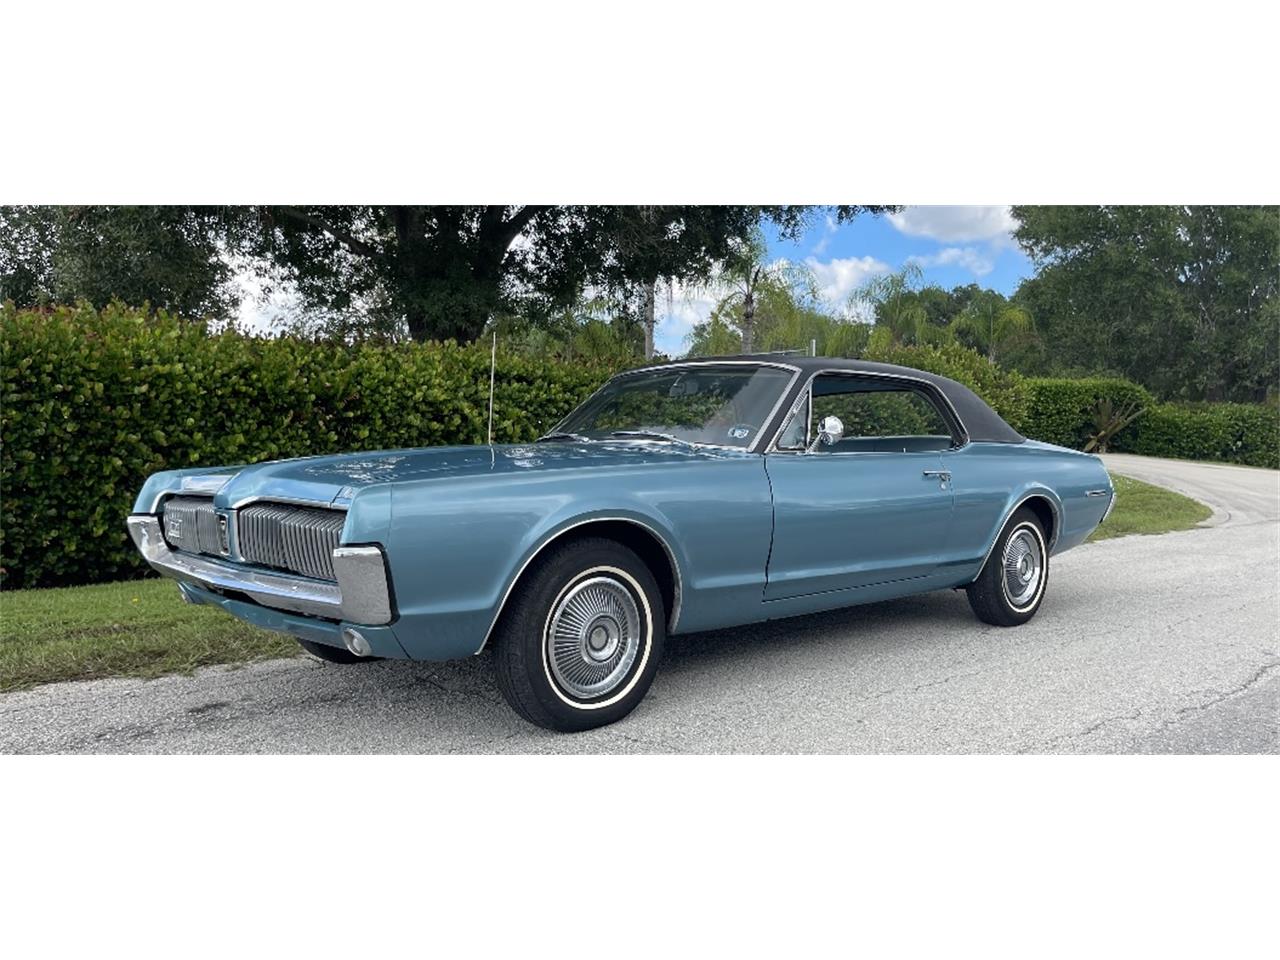 For Sale: 1967 Mercury Cougar in Pompano Beach, Florida for sale in Pompano Beach, FL